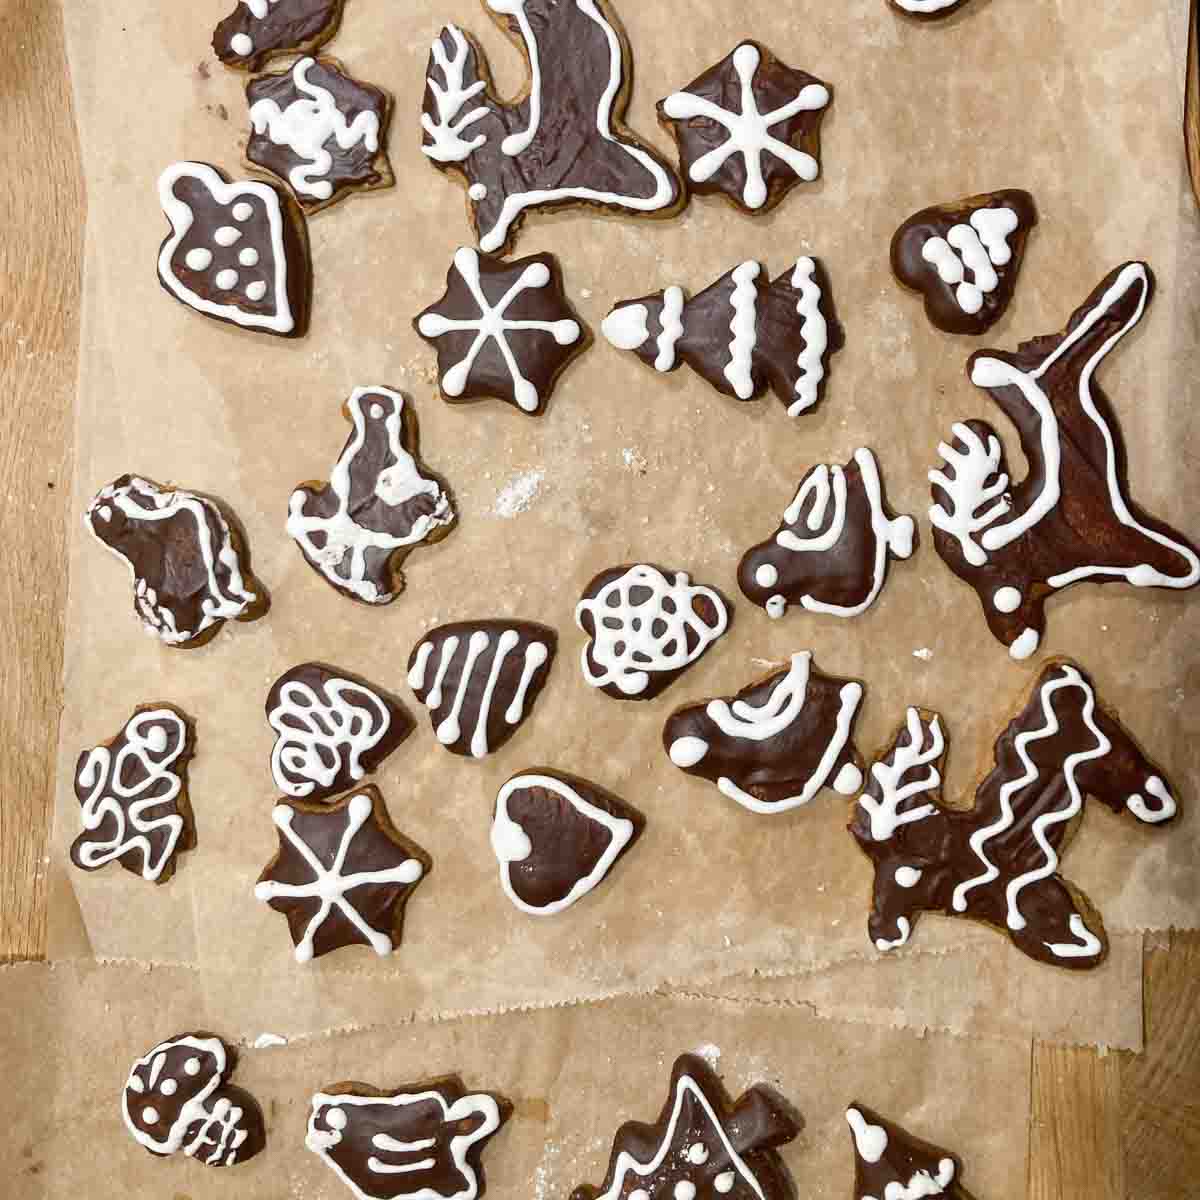 Lebkuchen Kekse in weihnachtlichen Formen mit Schokoglasur und Zuckerguss verzierung.